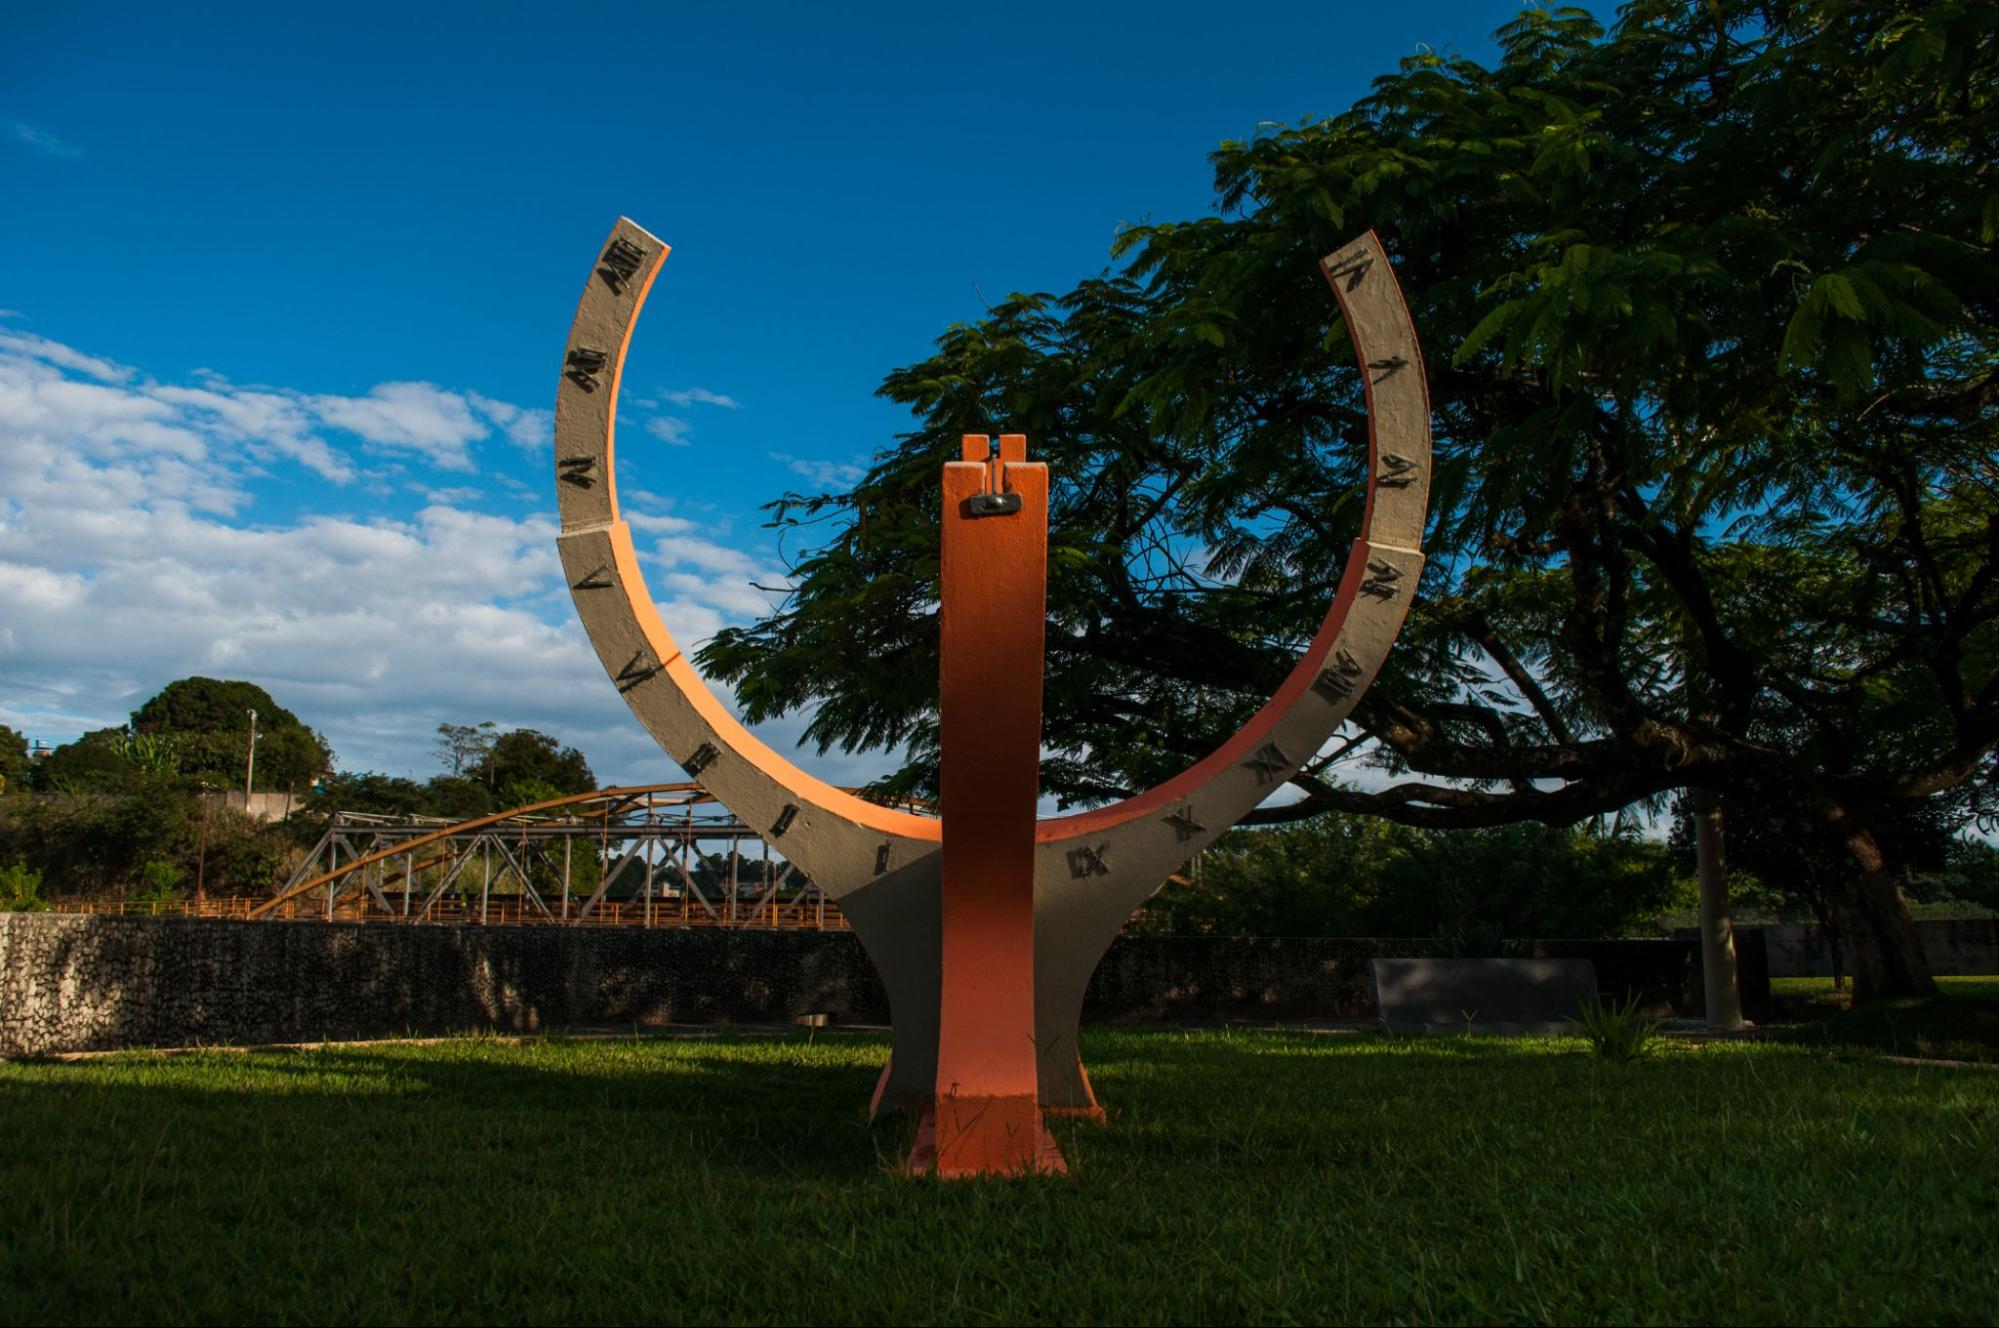 Relógio do Sol em Divinópolis MG. Escultura em forma de ferradura apontada para cima com os números romanos para indicar as horas.